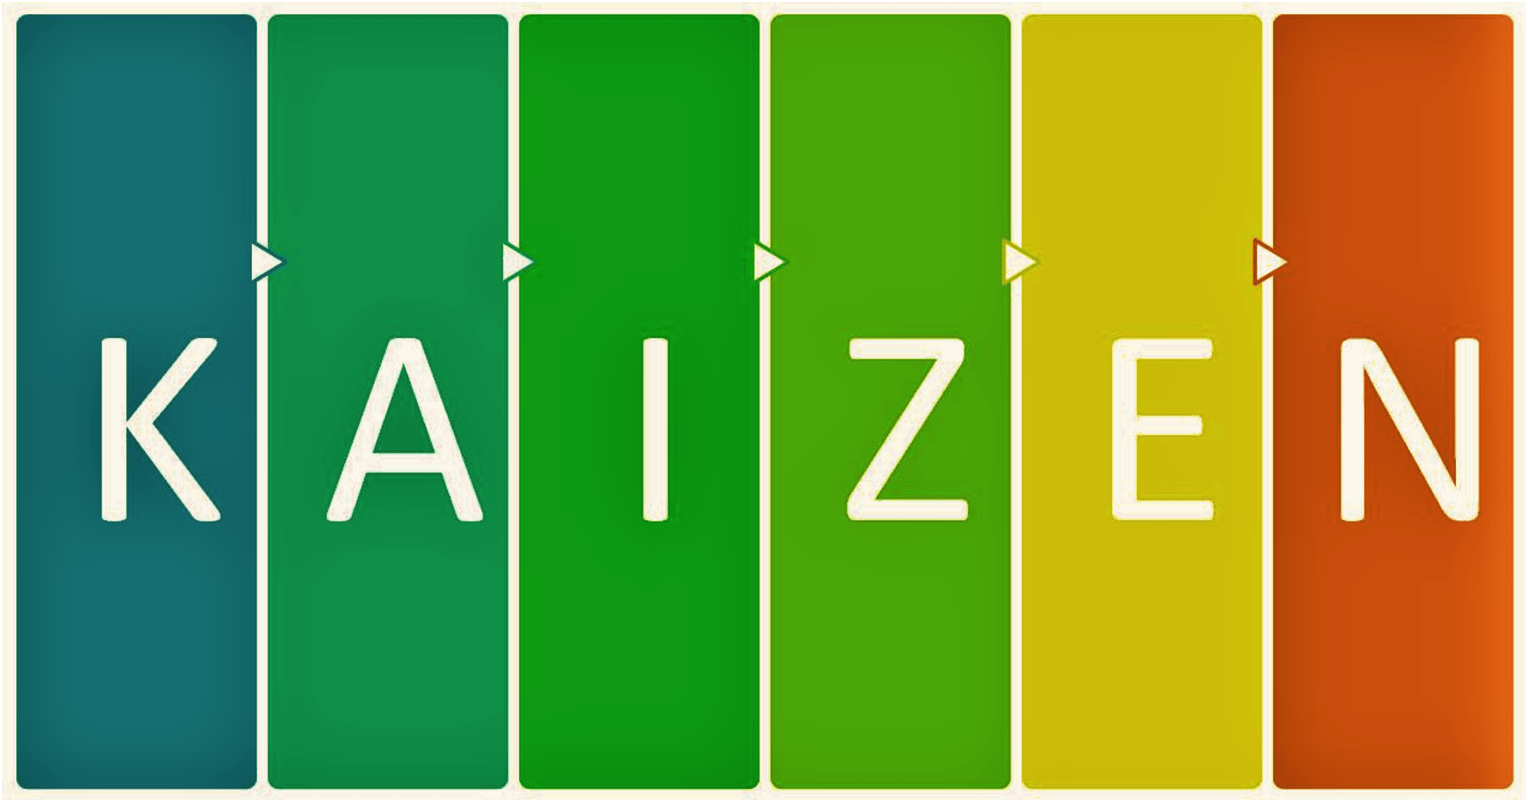 Kaizen - origem da filosofia, significado e aplicação para melhoria na vida